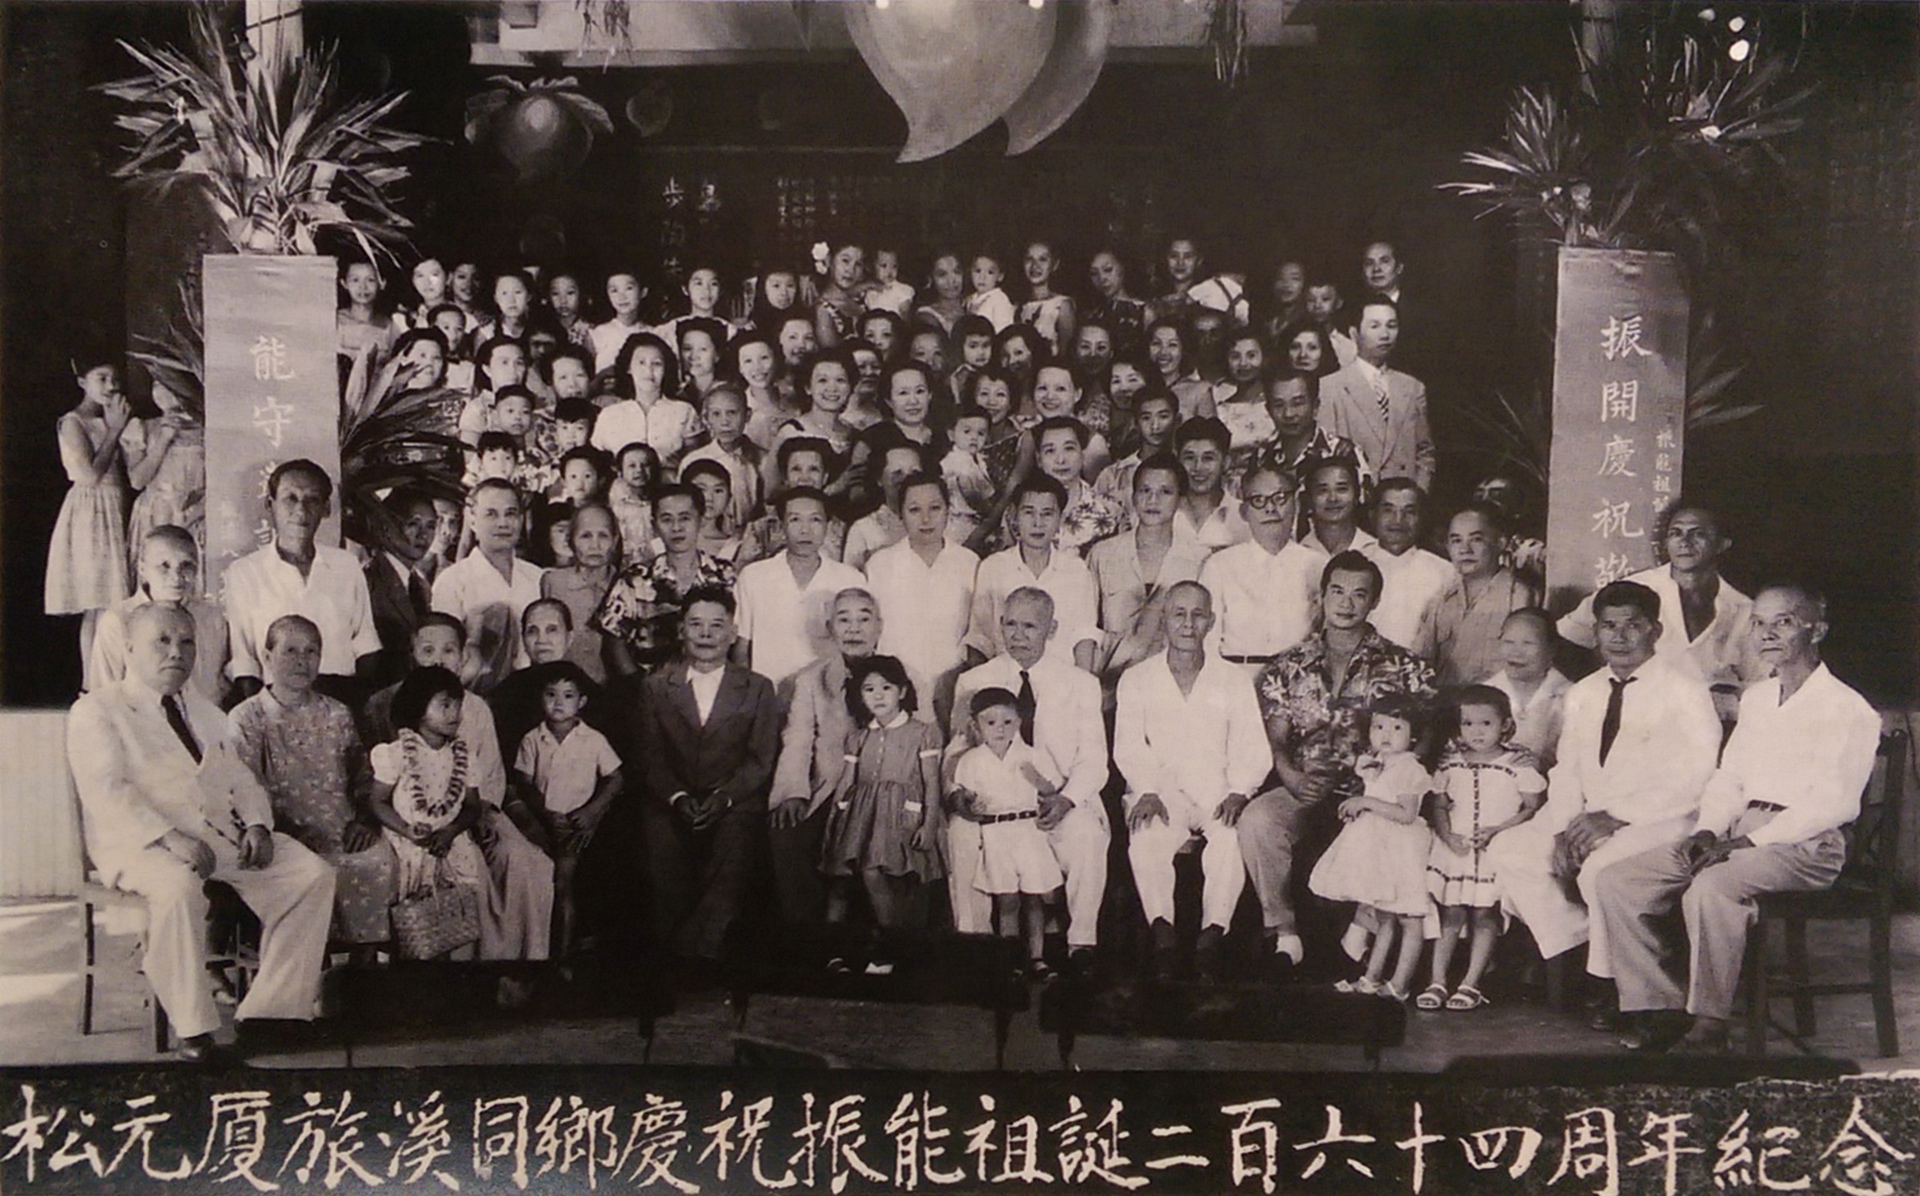 Chen Family History